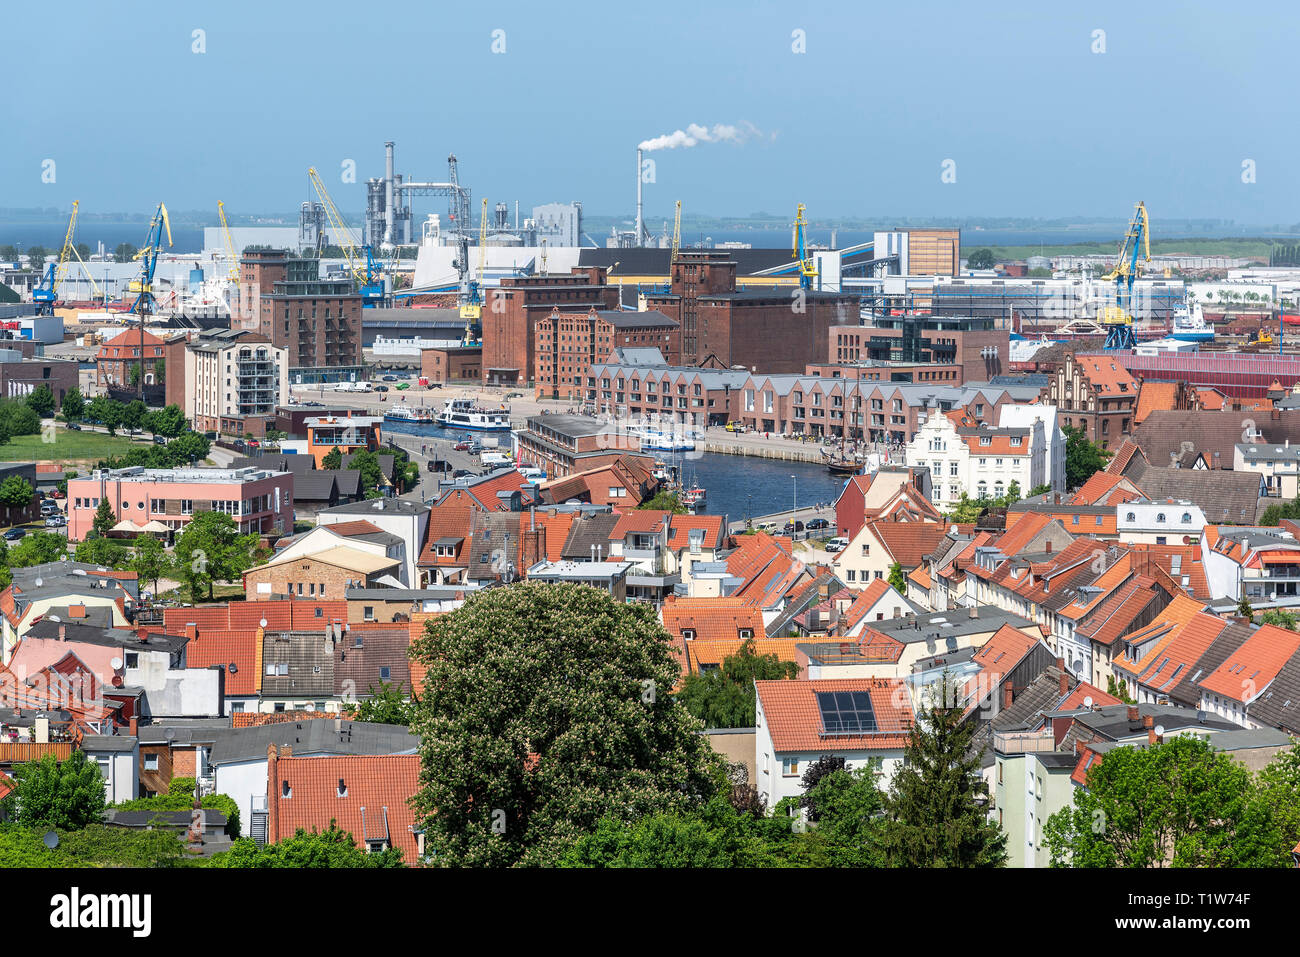 Hafen, St. Georg, St. Georgen, Wismar, Mecklenburg-Vorpommern, Deutschland Stockfoto